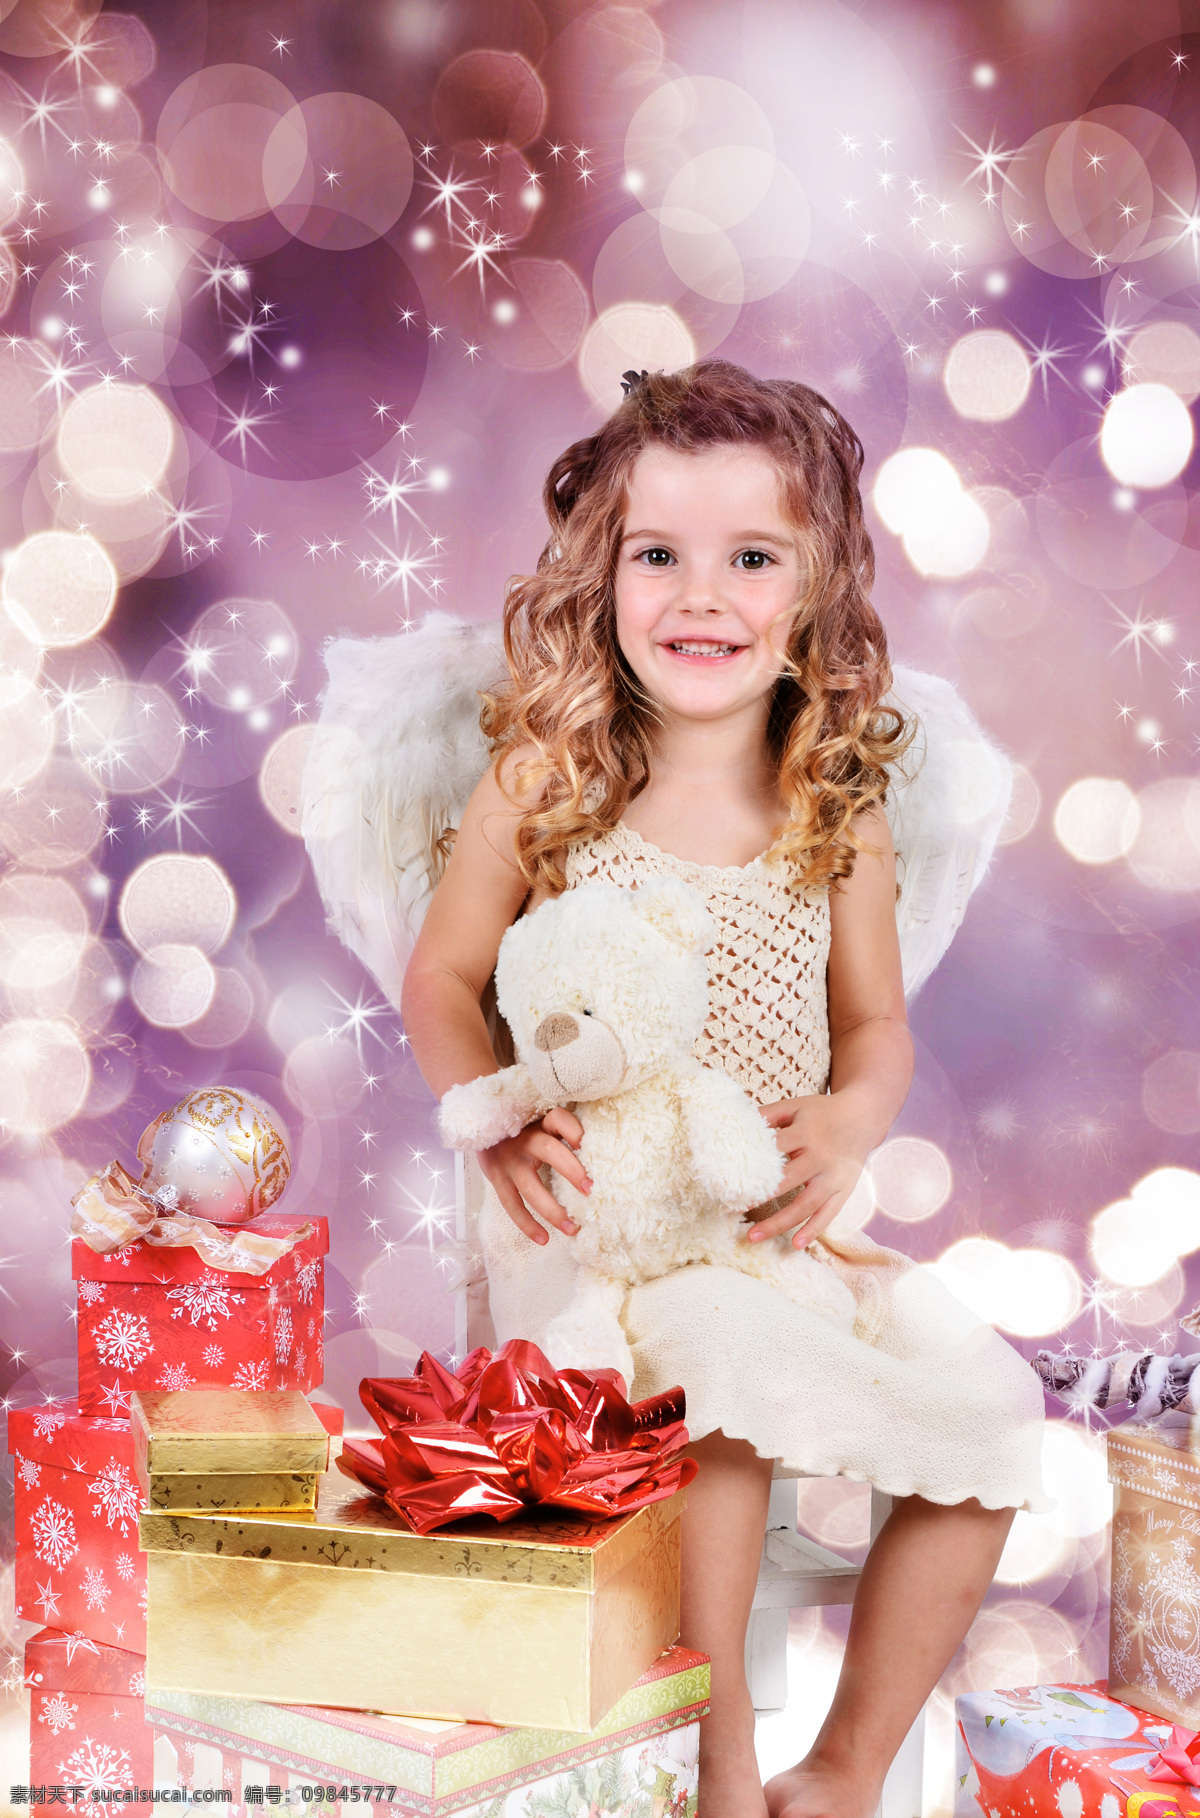 抱 玩具 熊 天使 装 外国 女孩 玩具熊 天使装 礼物盒 梦幻背景 儿童图片 人物图片